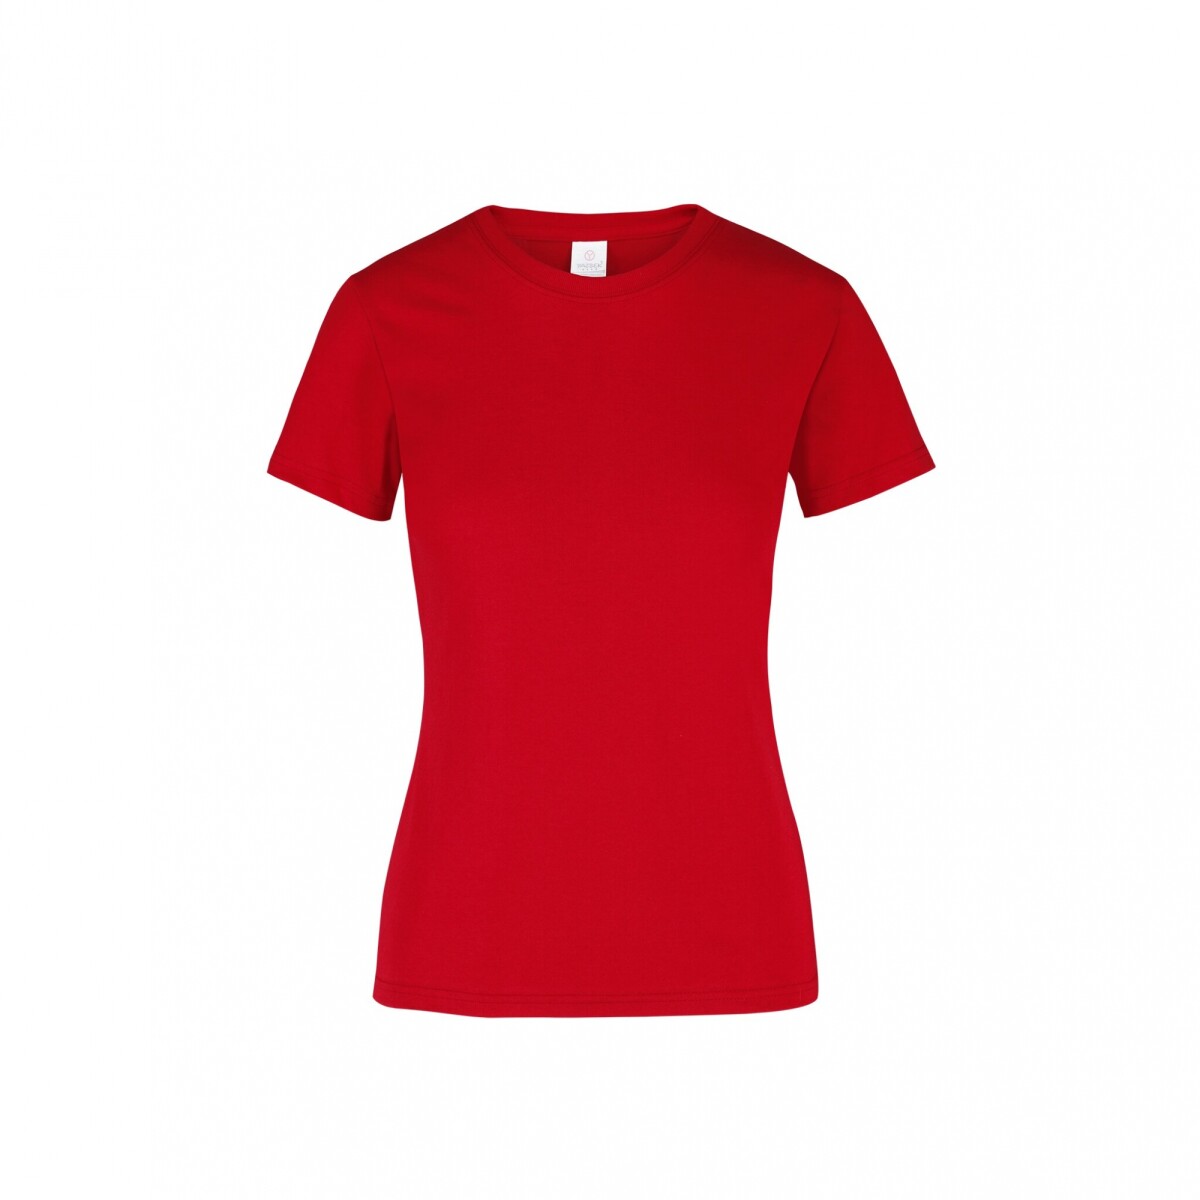 Camiseta a la base dama - Rojo 